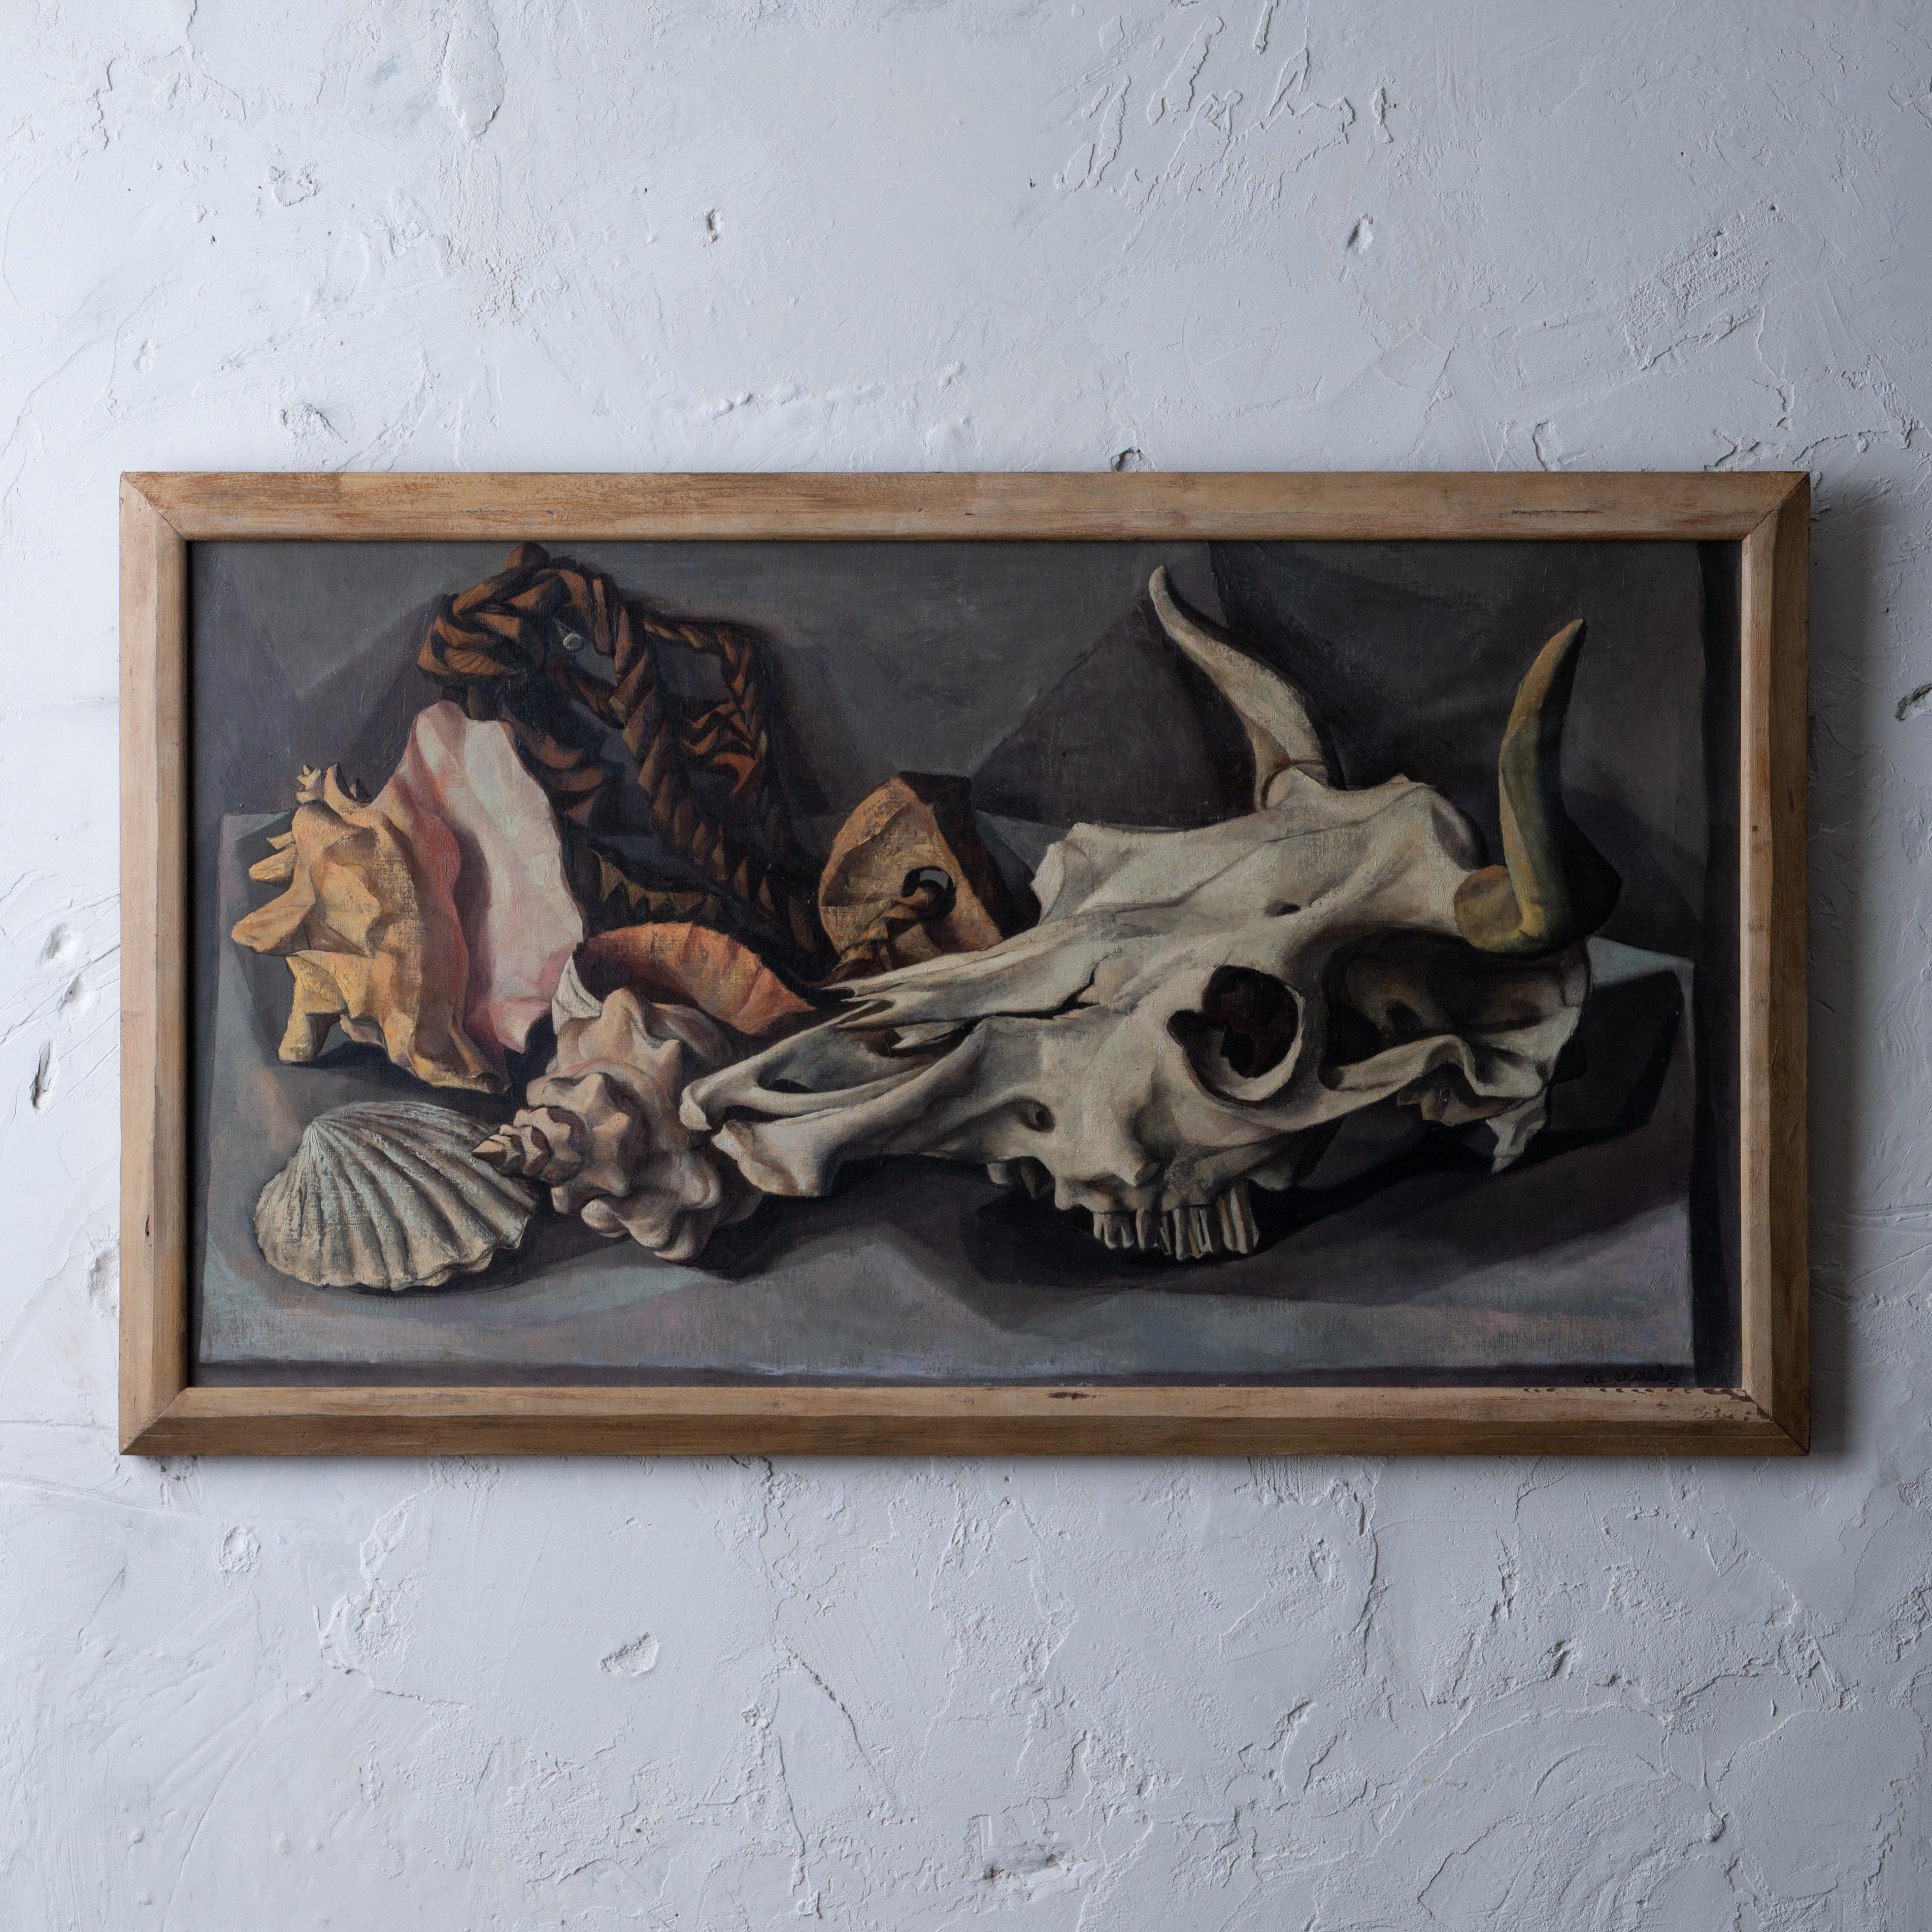 Francis de Erdely
(Hungary/California, 1904-1959)

Nature morte avec crâne et coquillages, vers 1950
huile sur toile

vue : 35 ½ par 19 ¼ pouces
Cadre : 38 ½ par 22 ½ pouces 